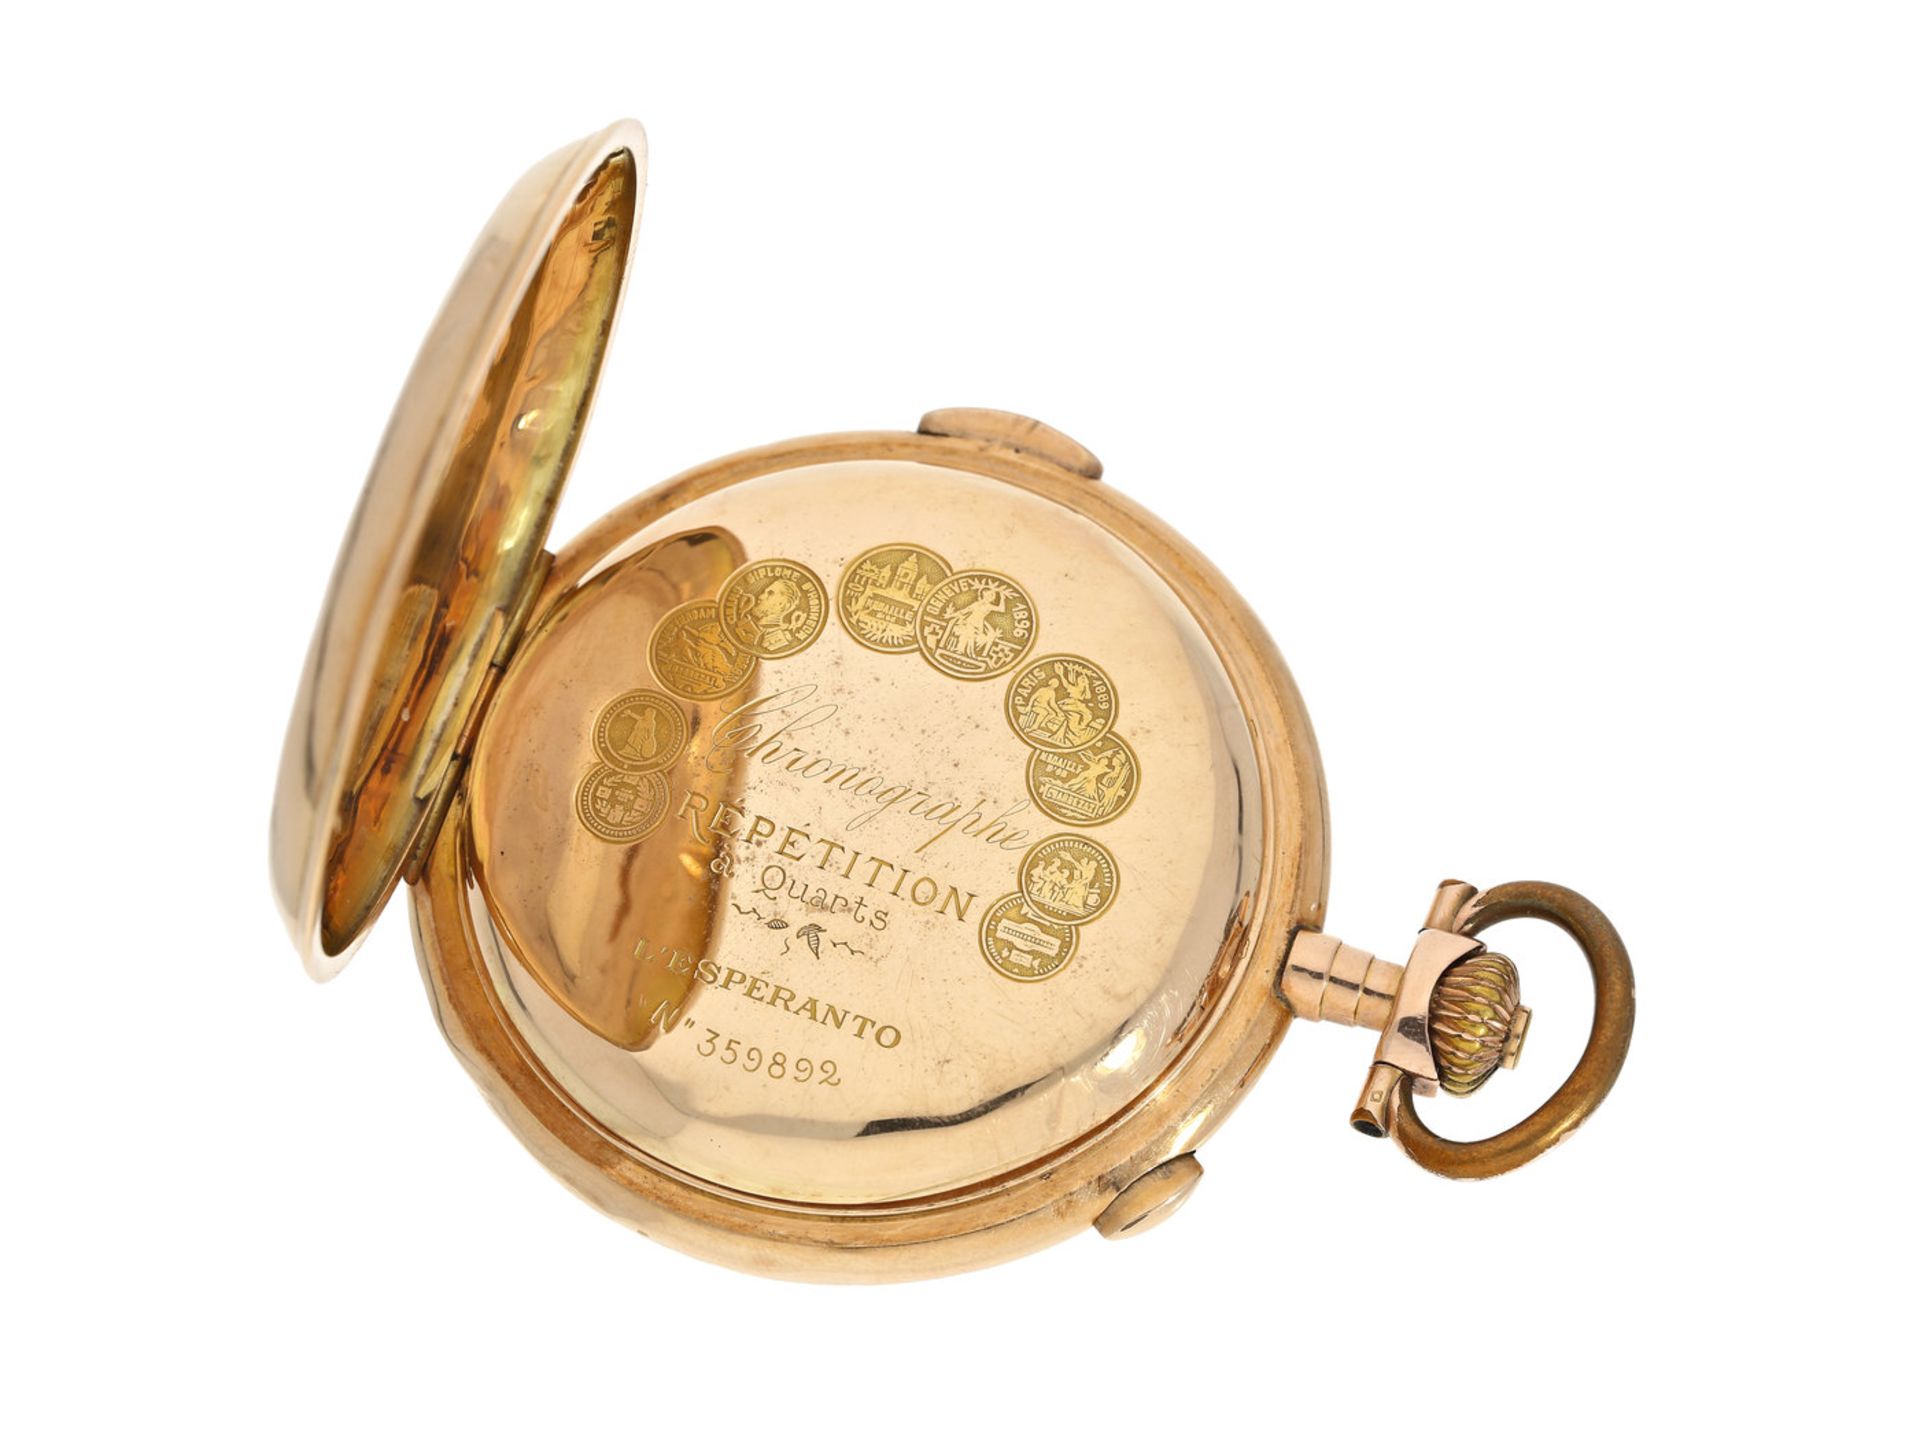 Taschenuhr: besonders große Goldsavonnette mit Repetition und Chronograph Le Phare "L'Esperanto", - Bild 4 aus 4